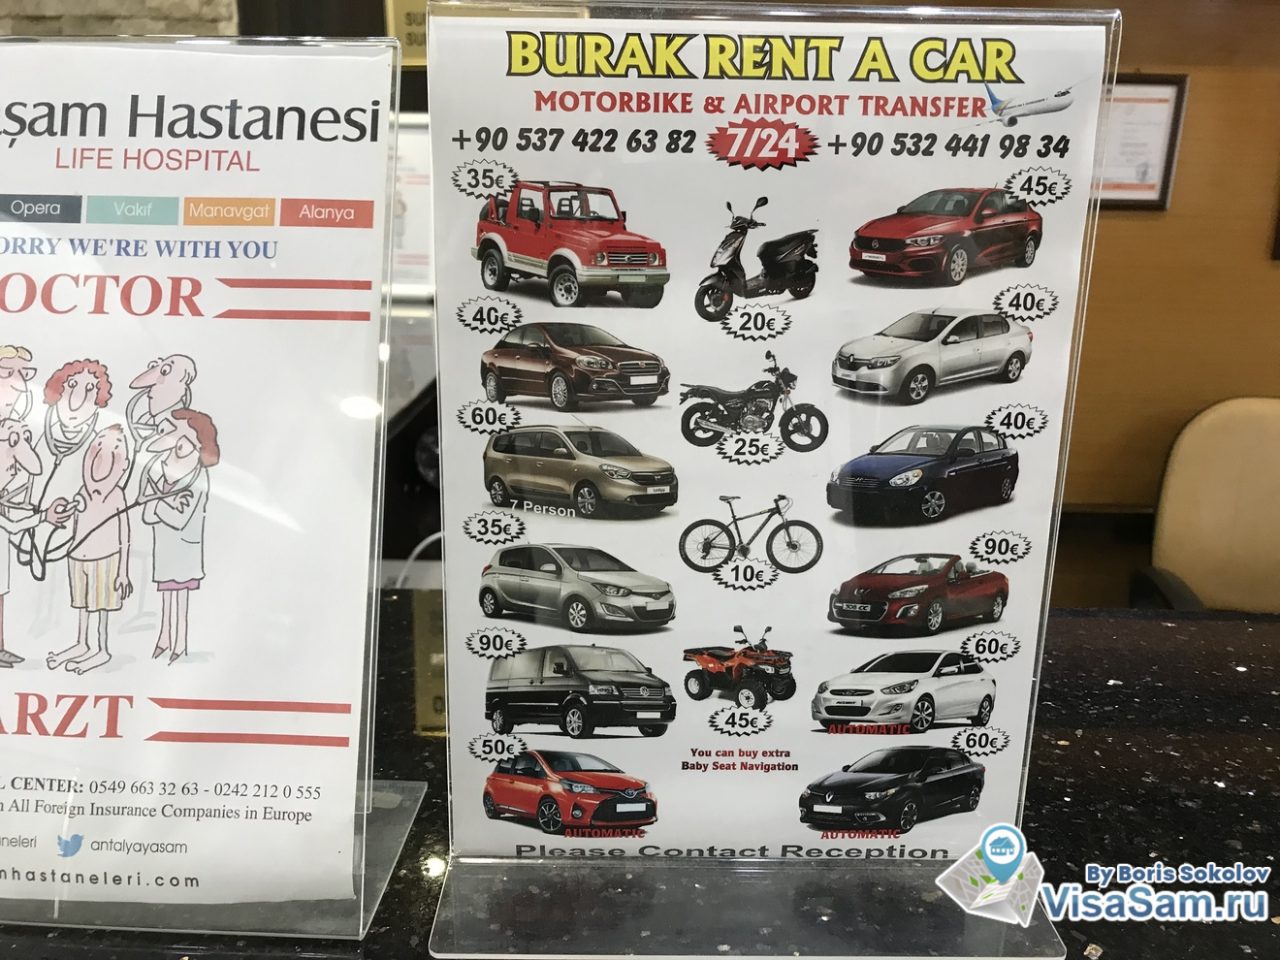 цена на аренду скутера, автомобиля и велосипеда в Турции